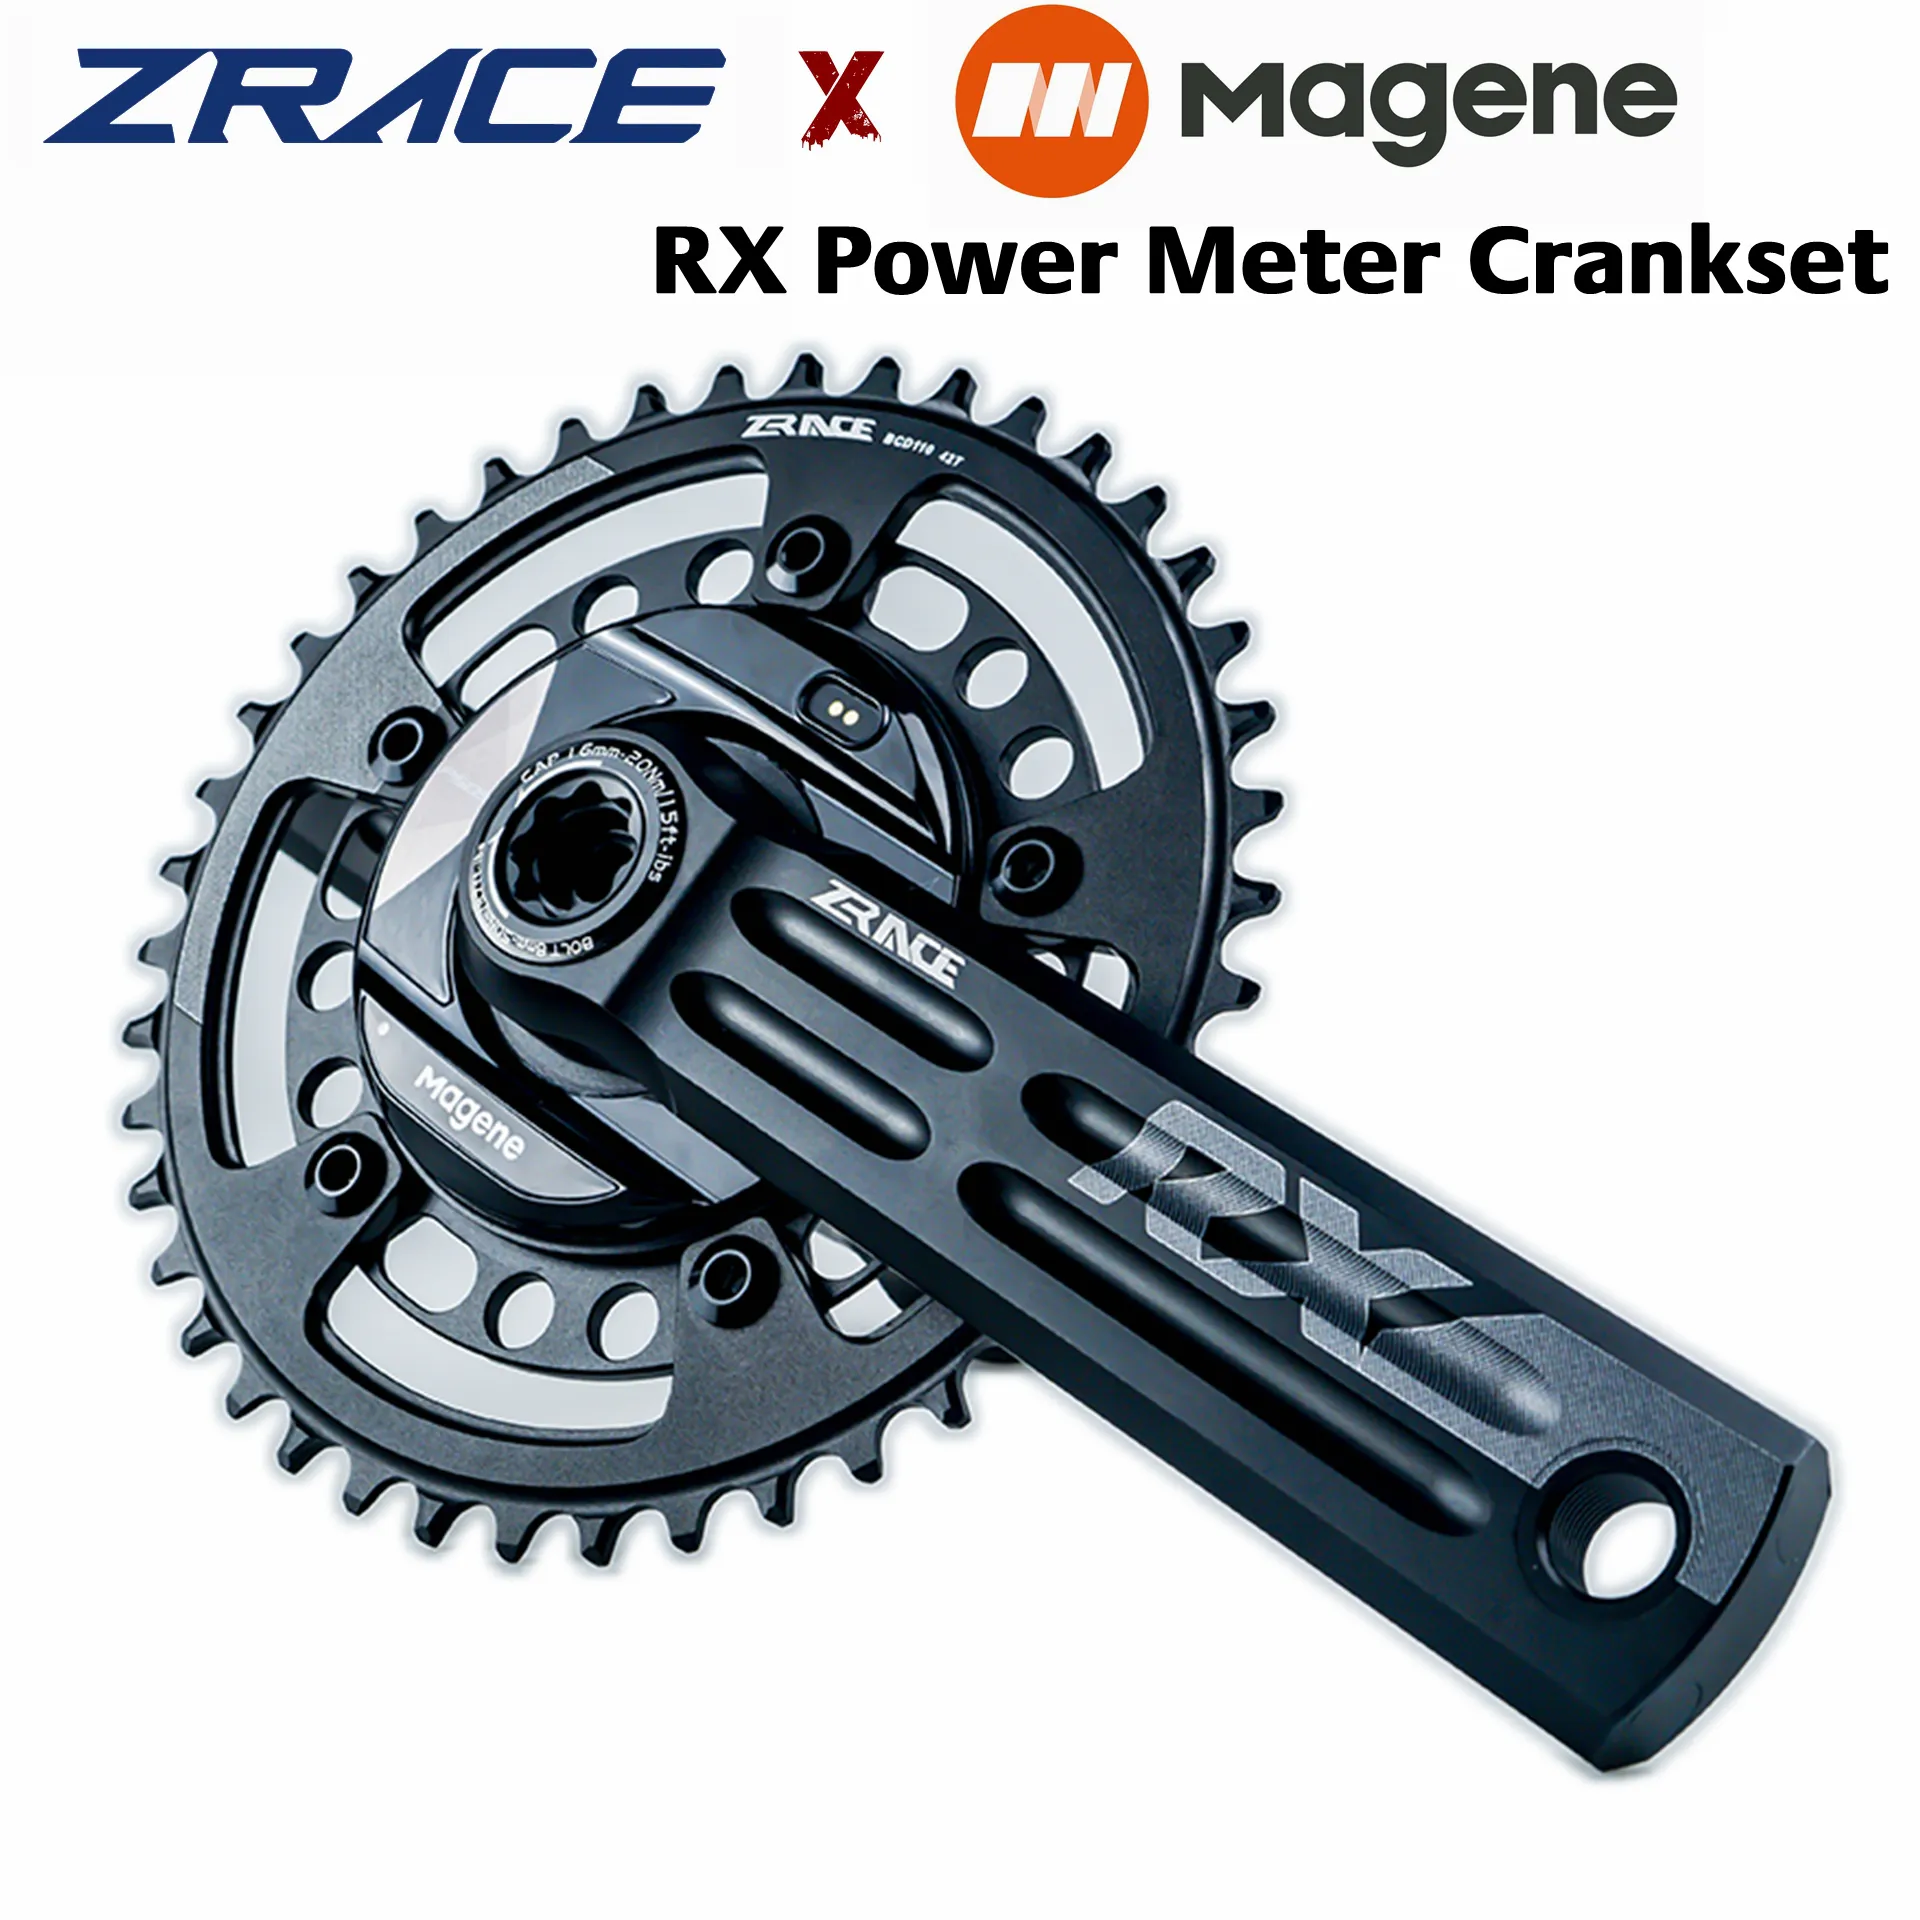 Zrace x Magene Rx METER CRANKETTURE METTRO 2 X 10/11/12 Speedt Chainset, Dub Bottom FancEt, Power Crank, P505 Power Meter Spider